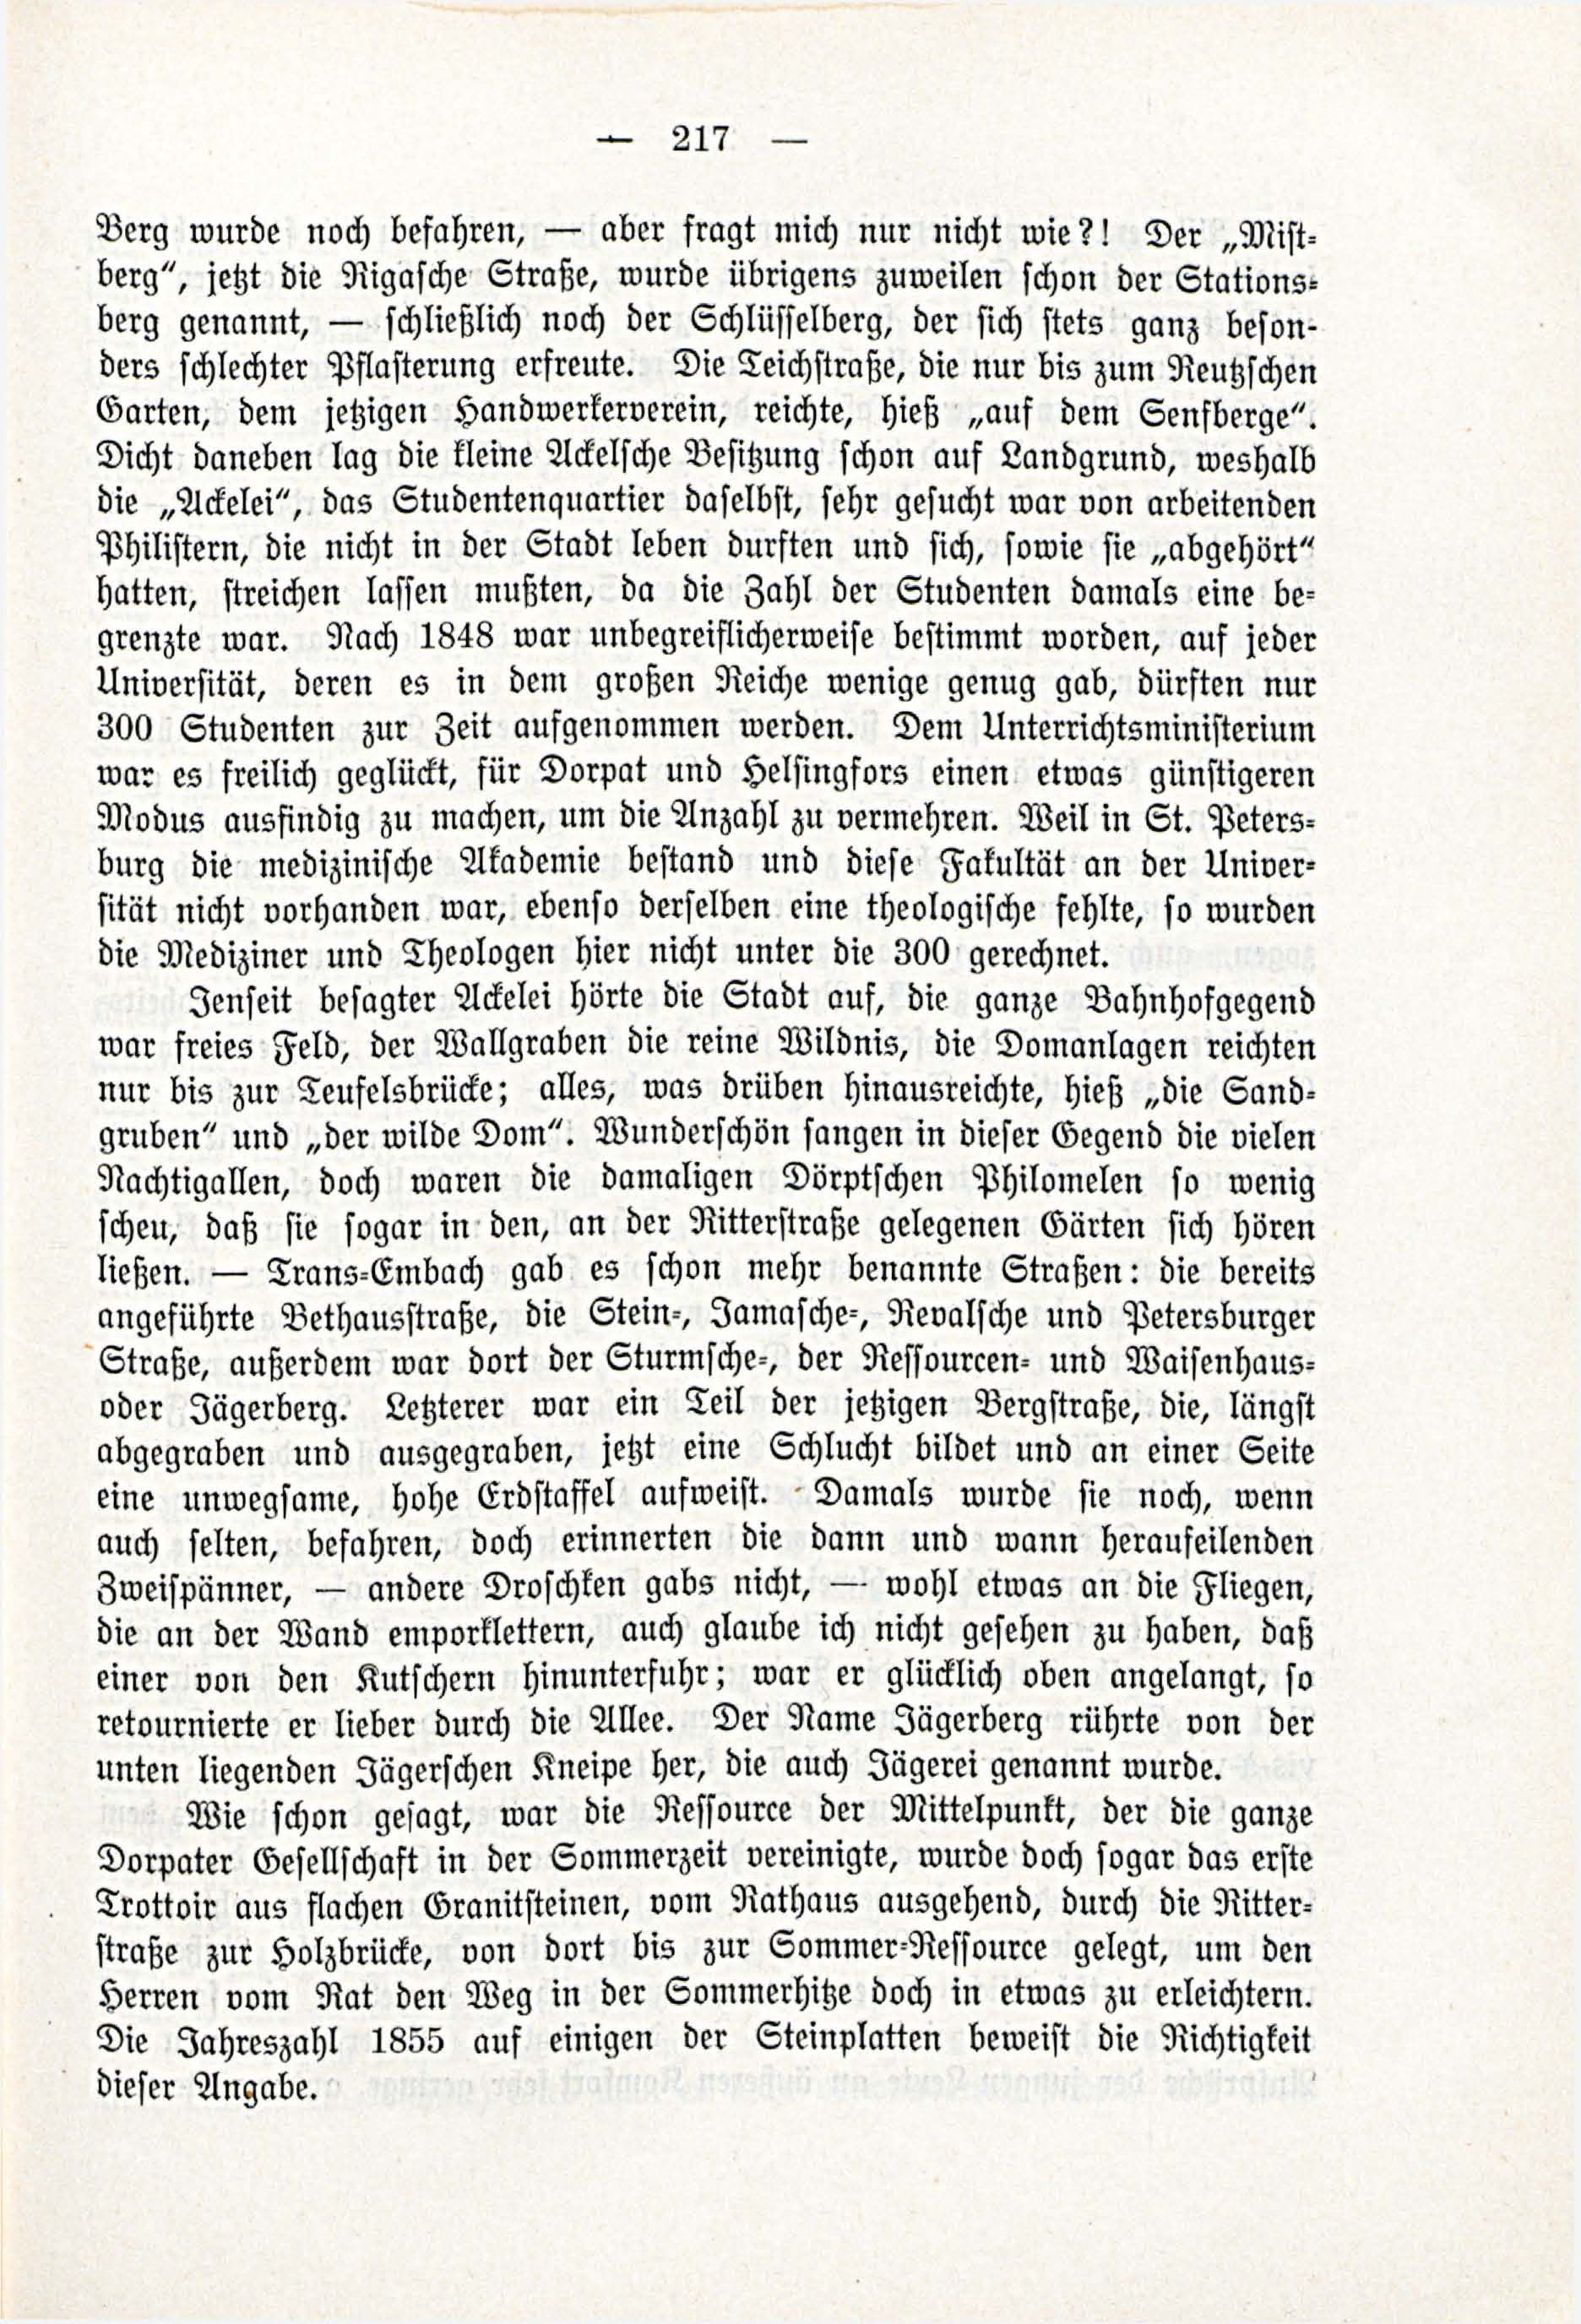 Deutsche Monatsschrift für Russland [3/03] (1914) | 63. (217) Main body of text